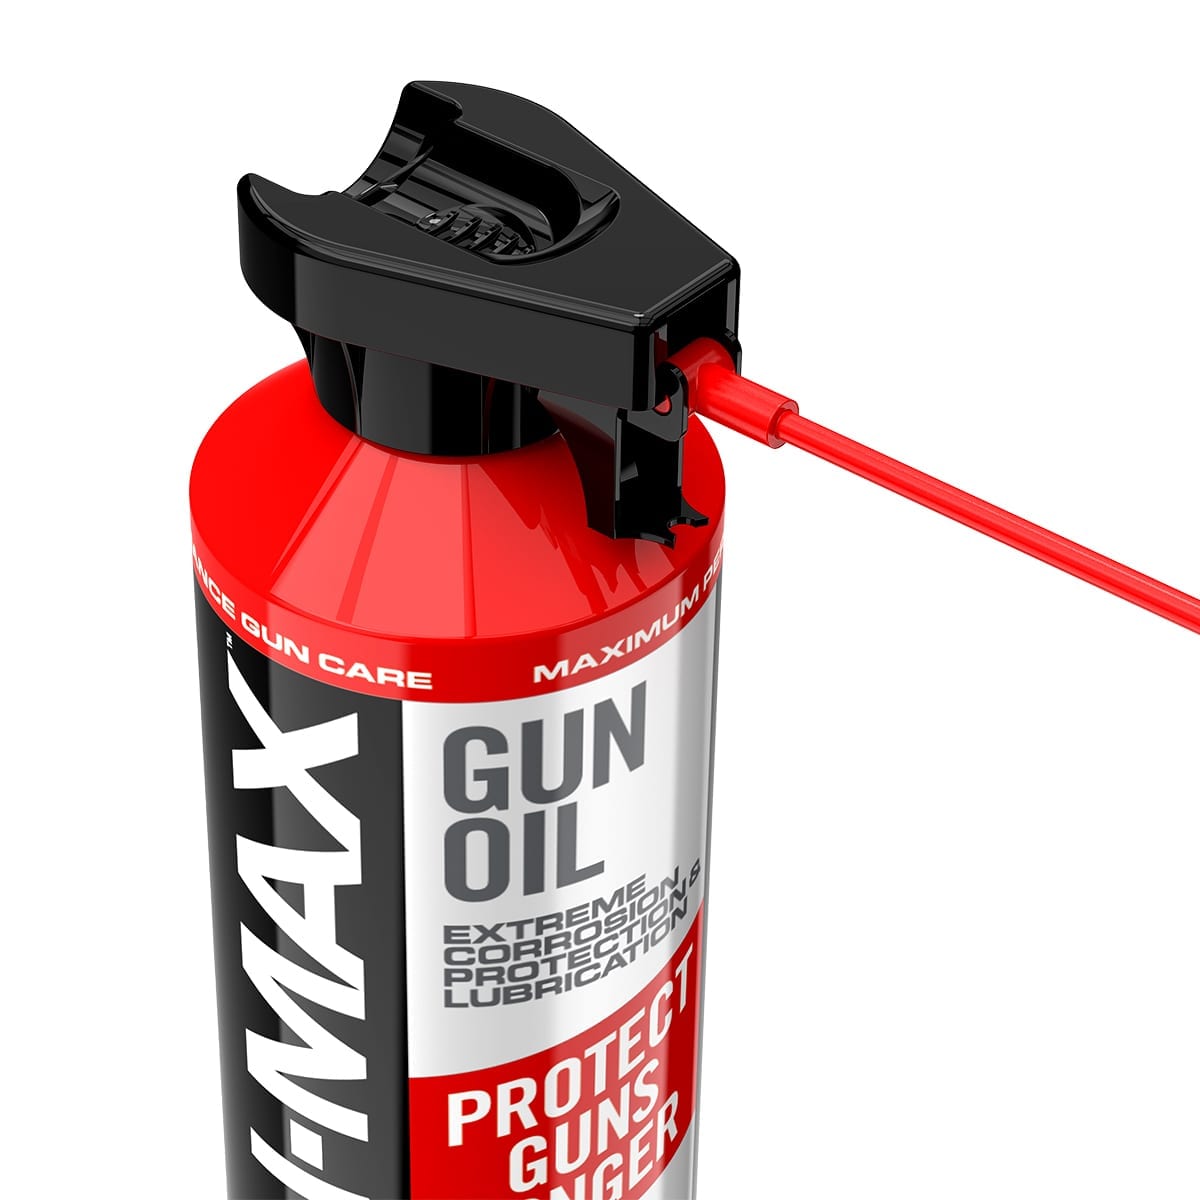 REAL AVID - Max Lubricate & Protect Gun Oil ( 12 Oz )